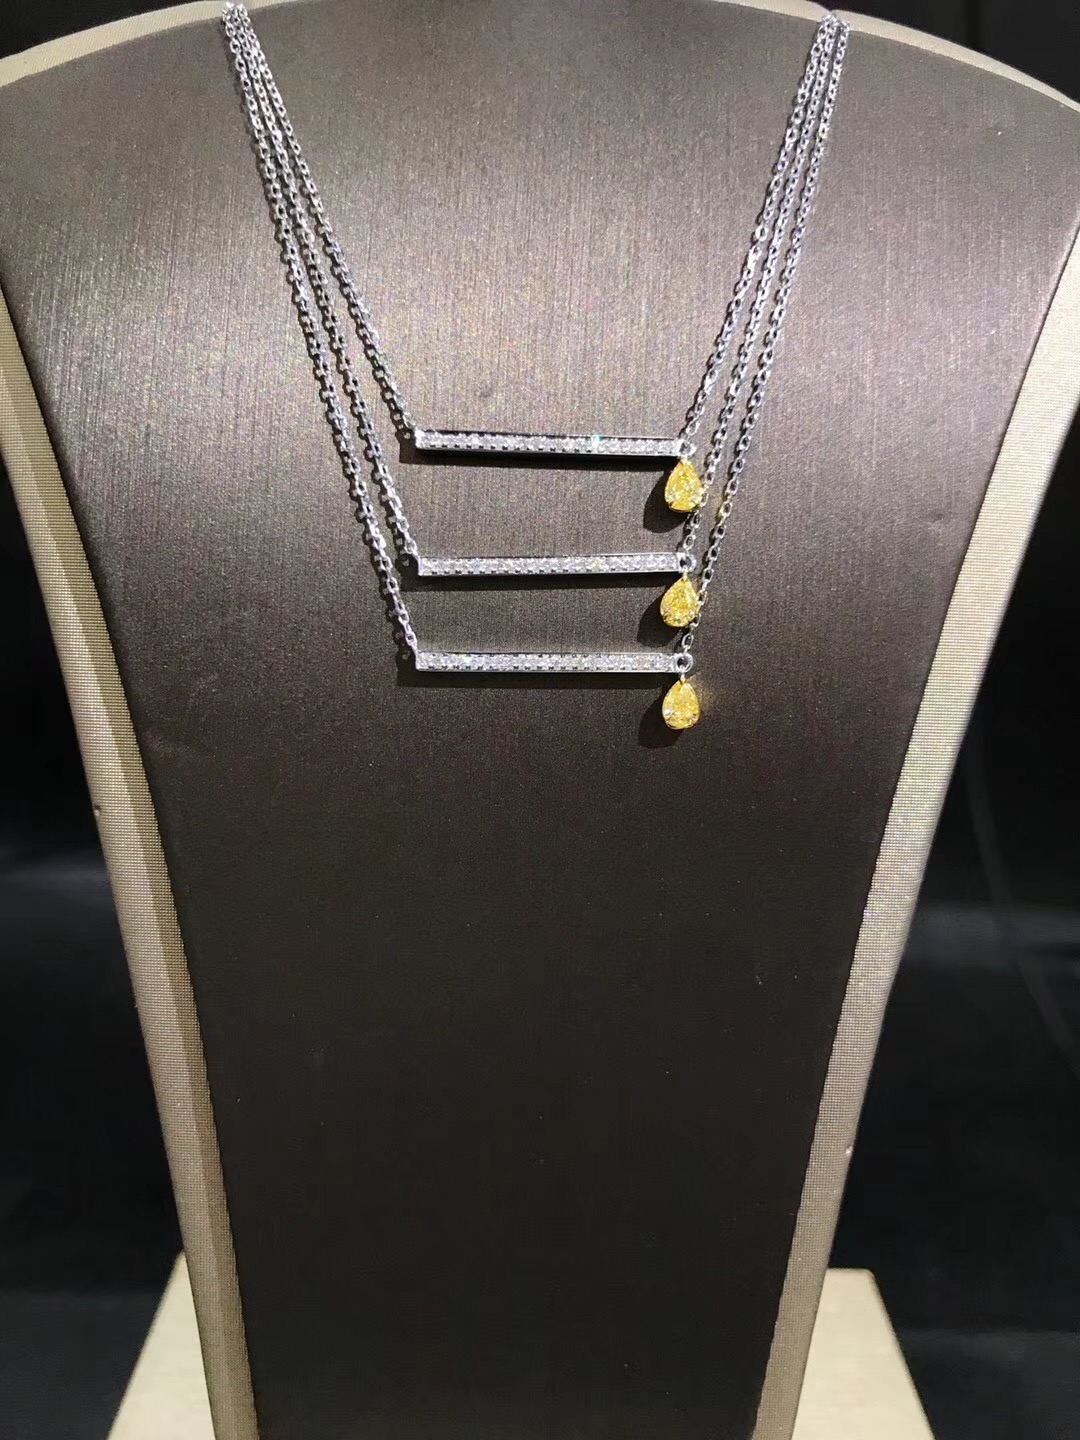 NW00998-15 Diamond Necklaces